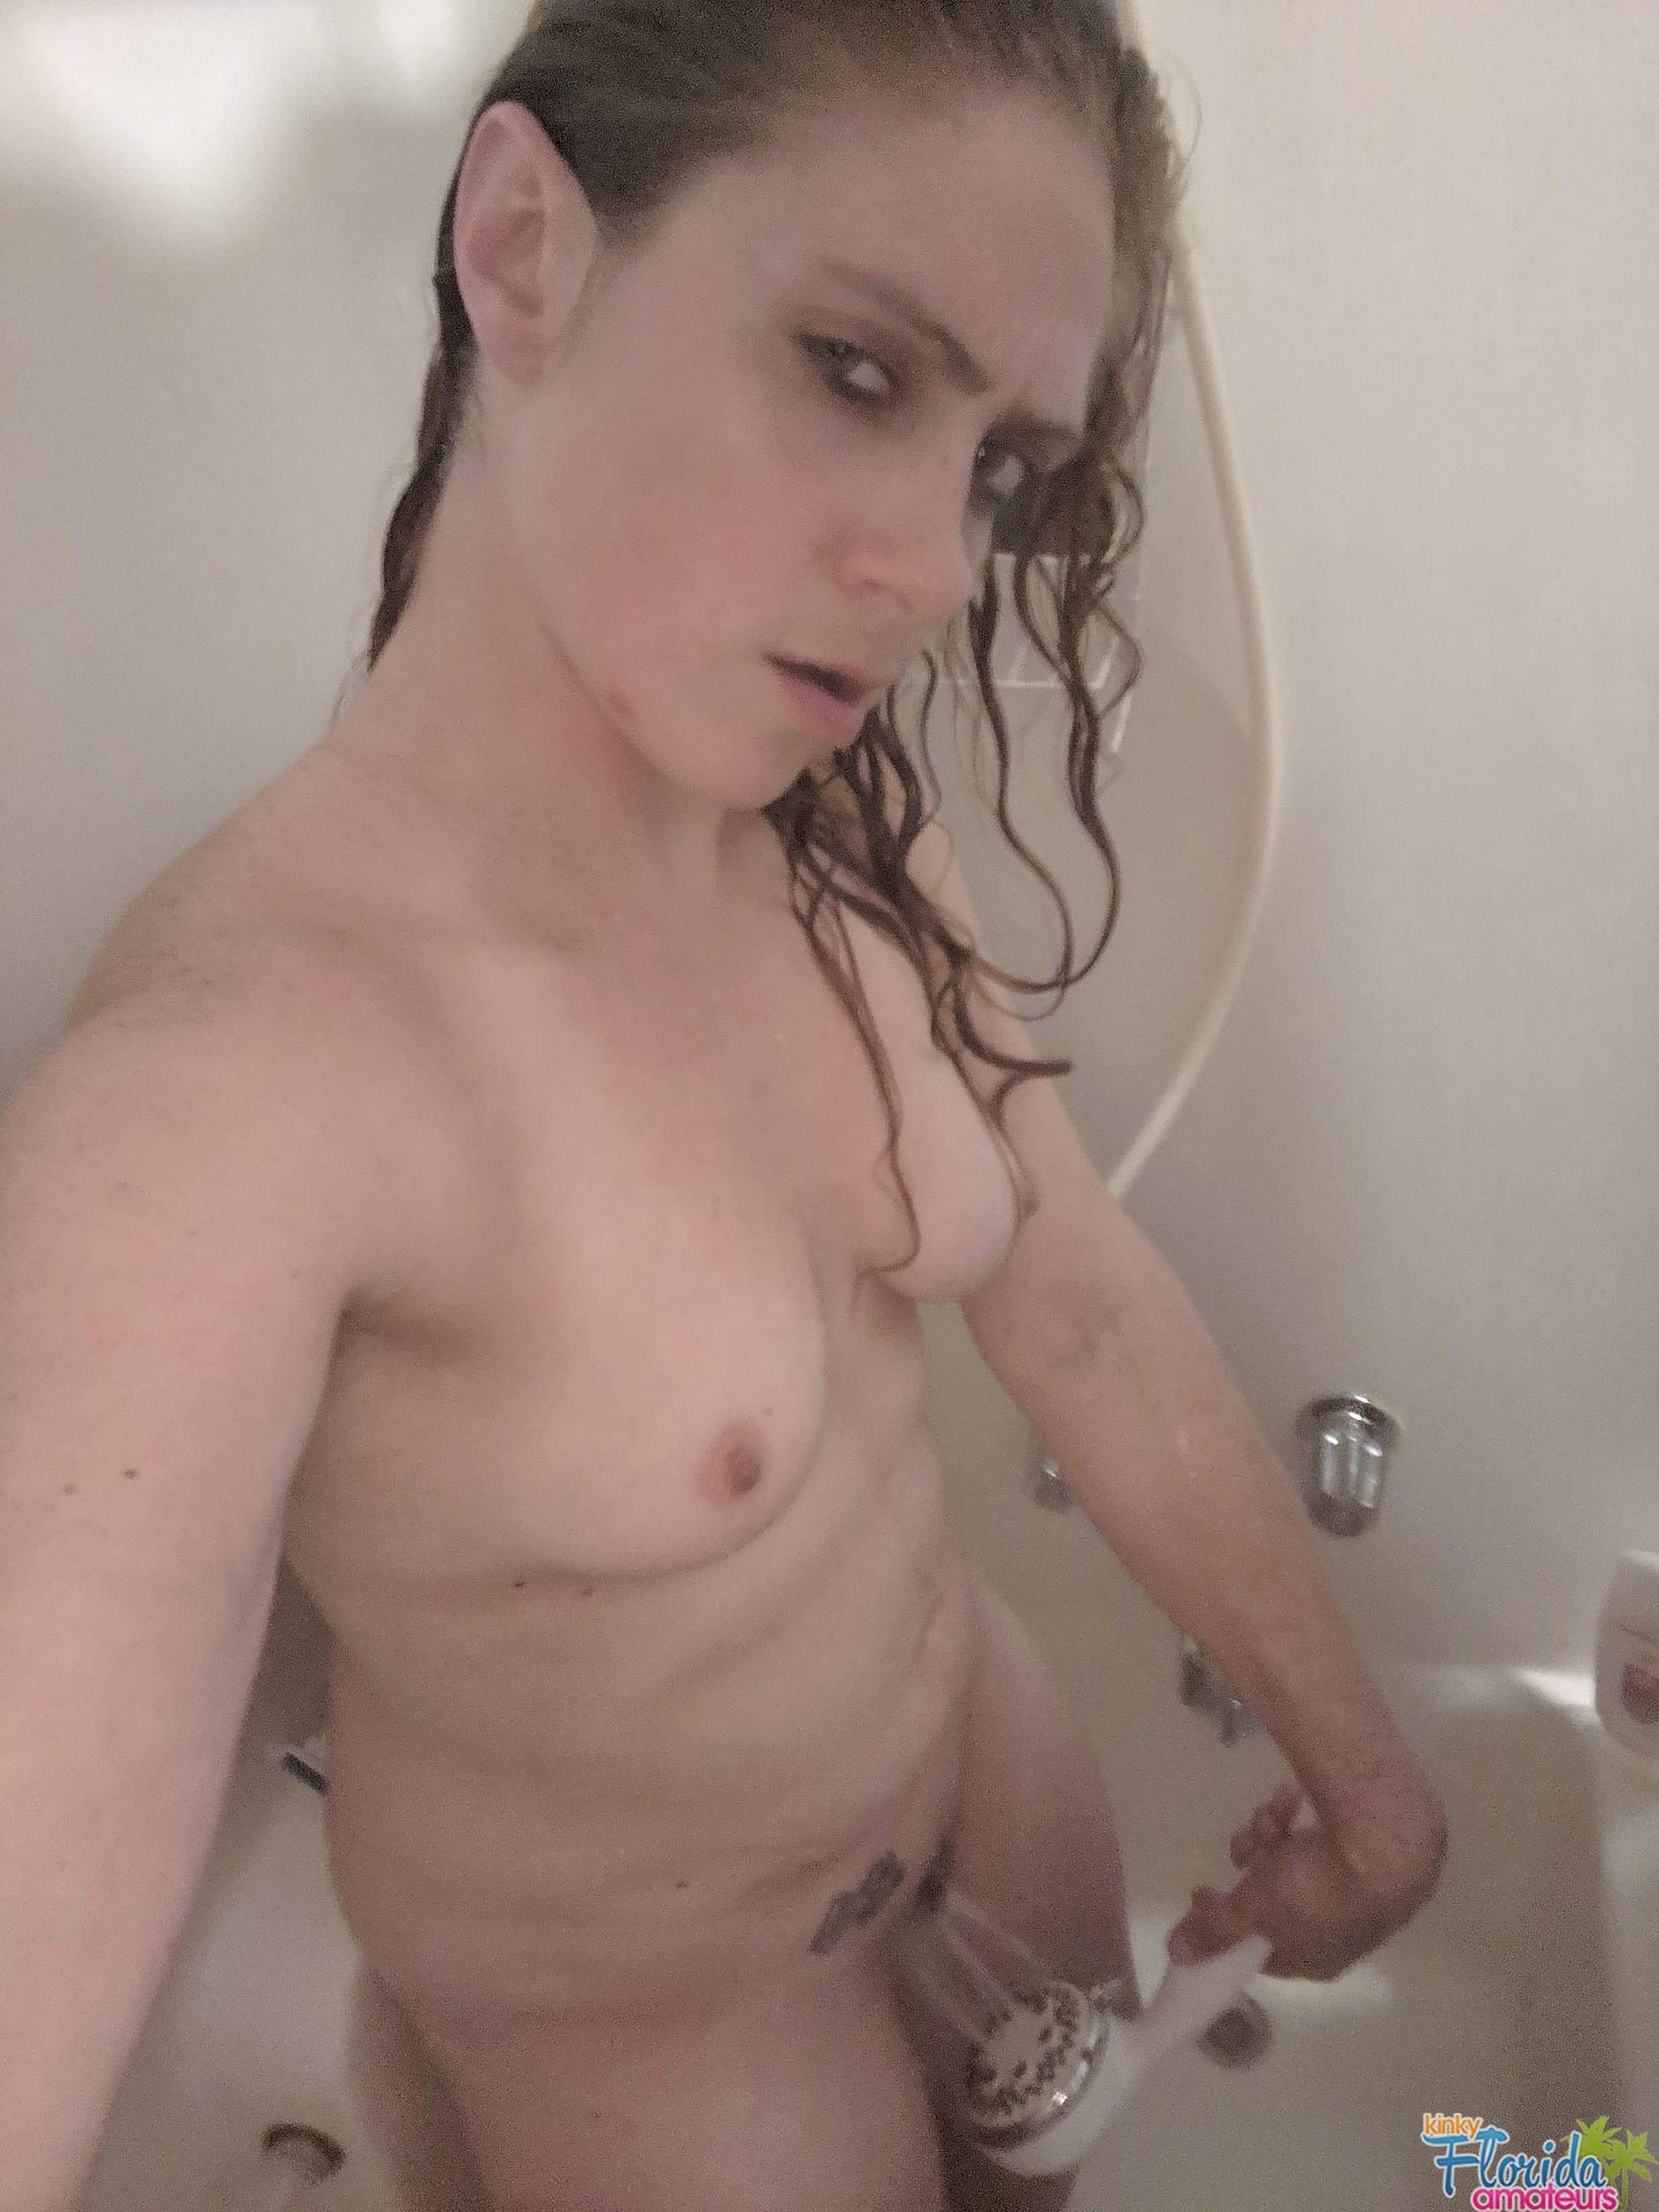 Girl nackt selfie